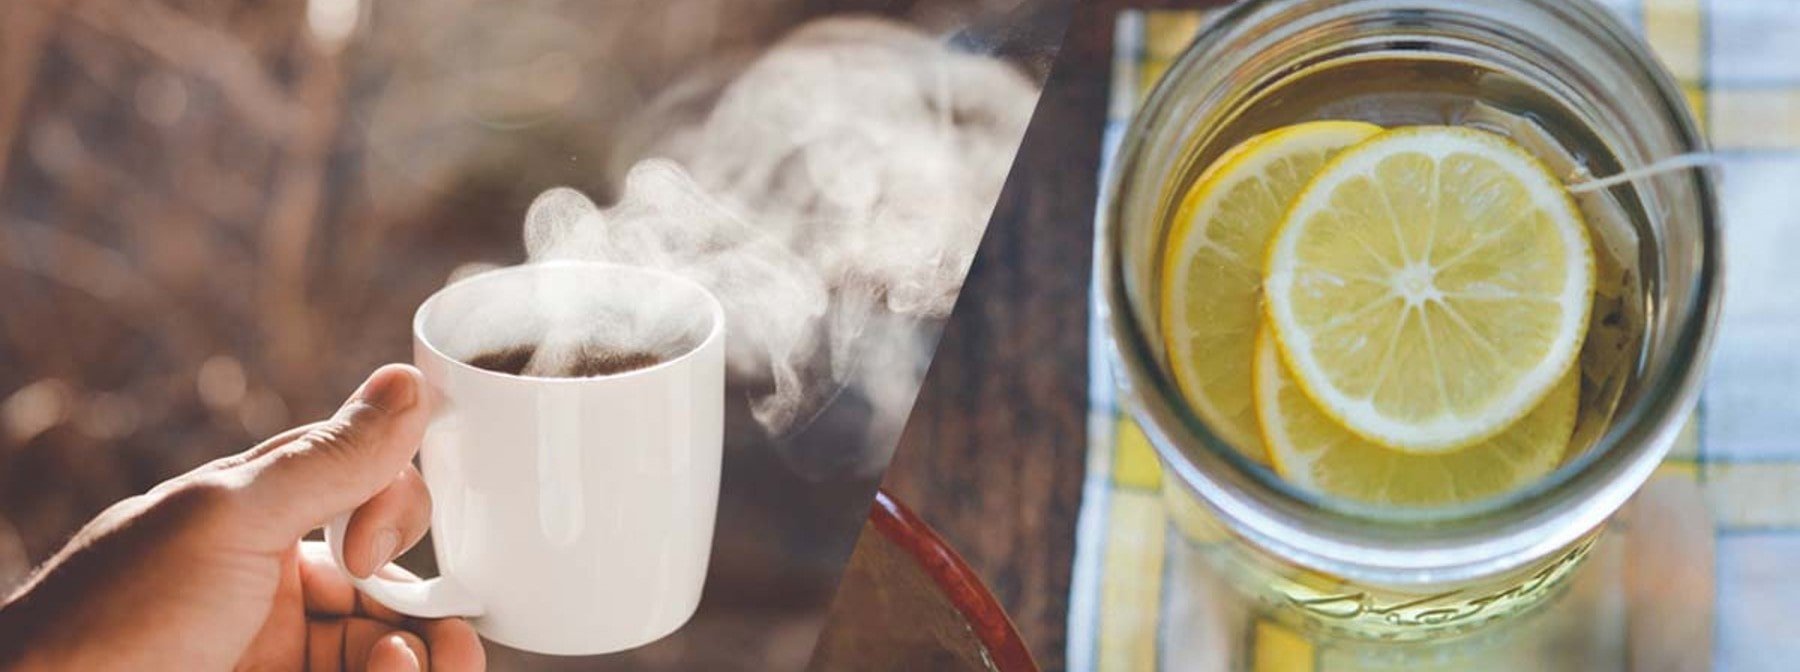 Co je dieta ‚káva s citronem‘? Benefity a vedlejší účinky